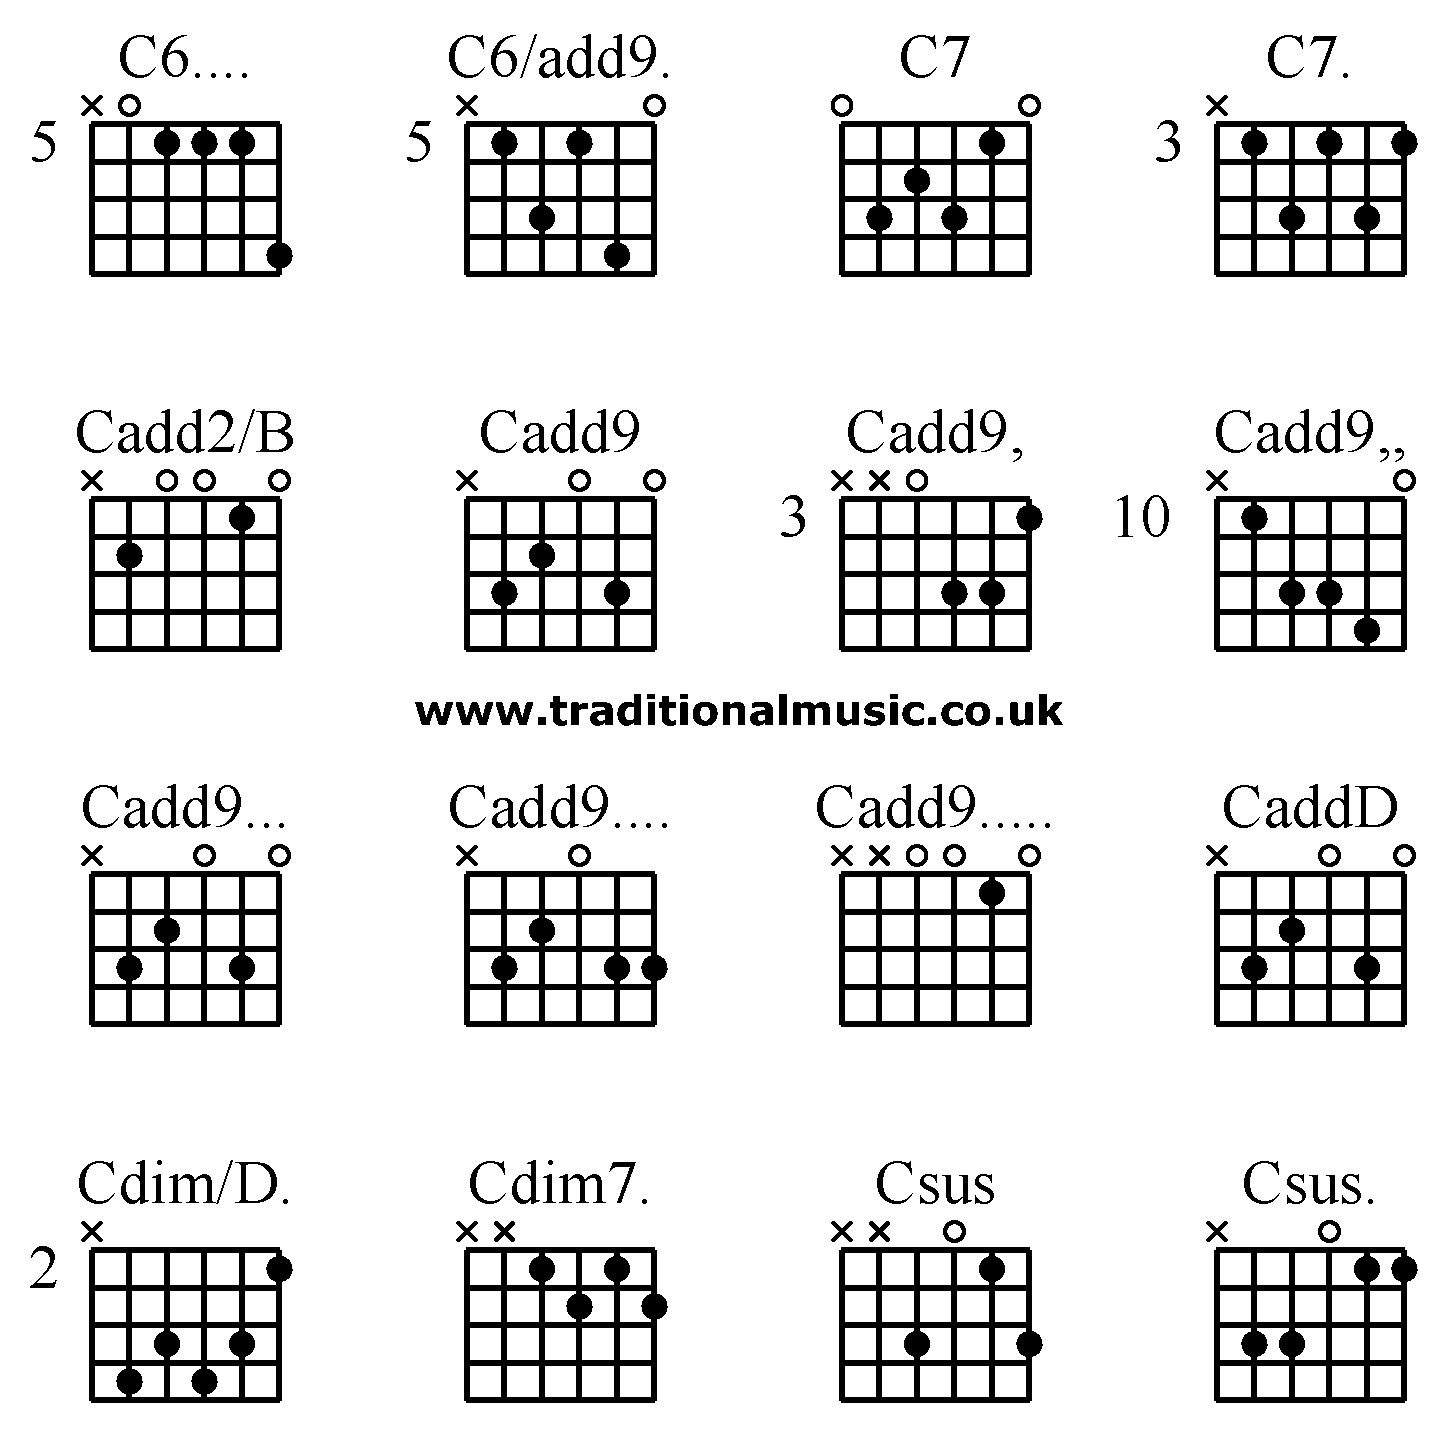 Advanced guitar chords:C6.... C6/add9. C7 C7., Cadd2/B Cadd9 Cadd9, Cadd9,,, Cadd9... Cadd9.... Cadd9..... CaddD, Cdim/D. Cdim7. Csus Csus.